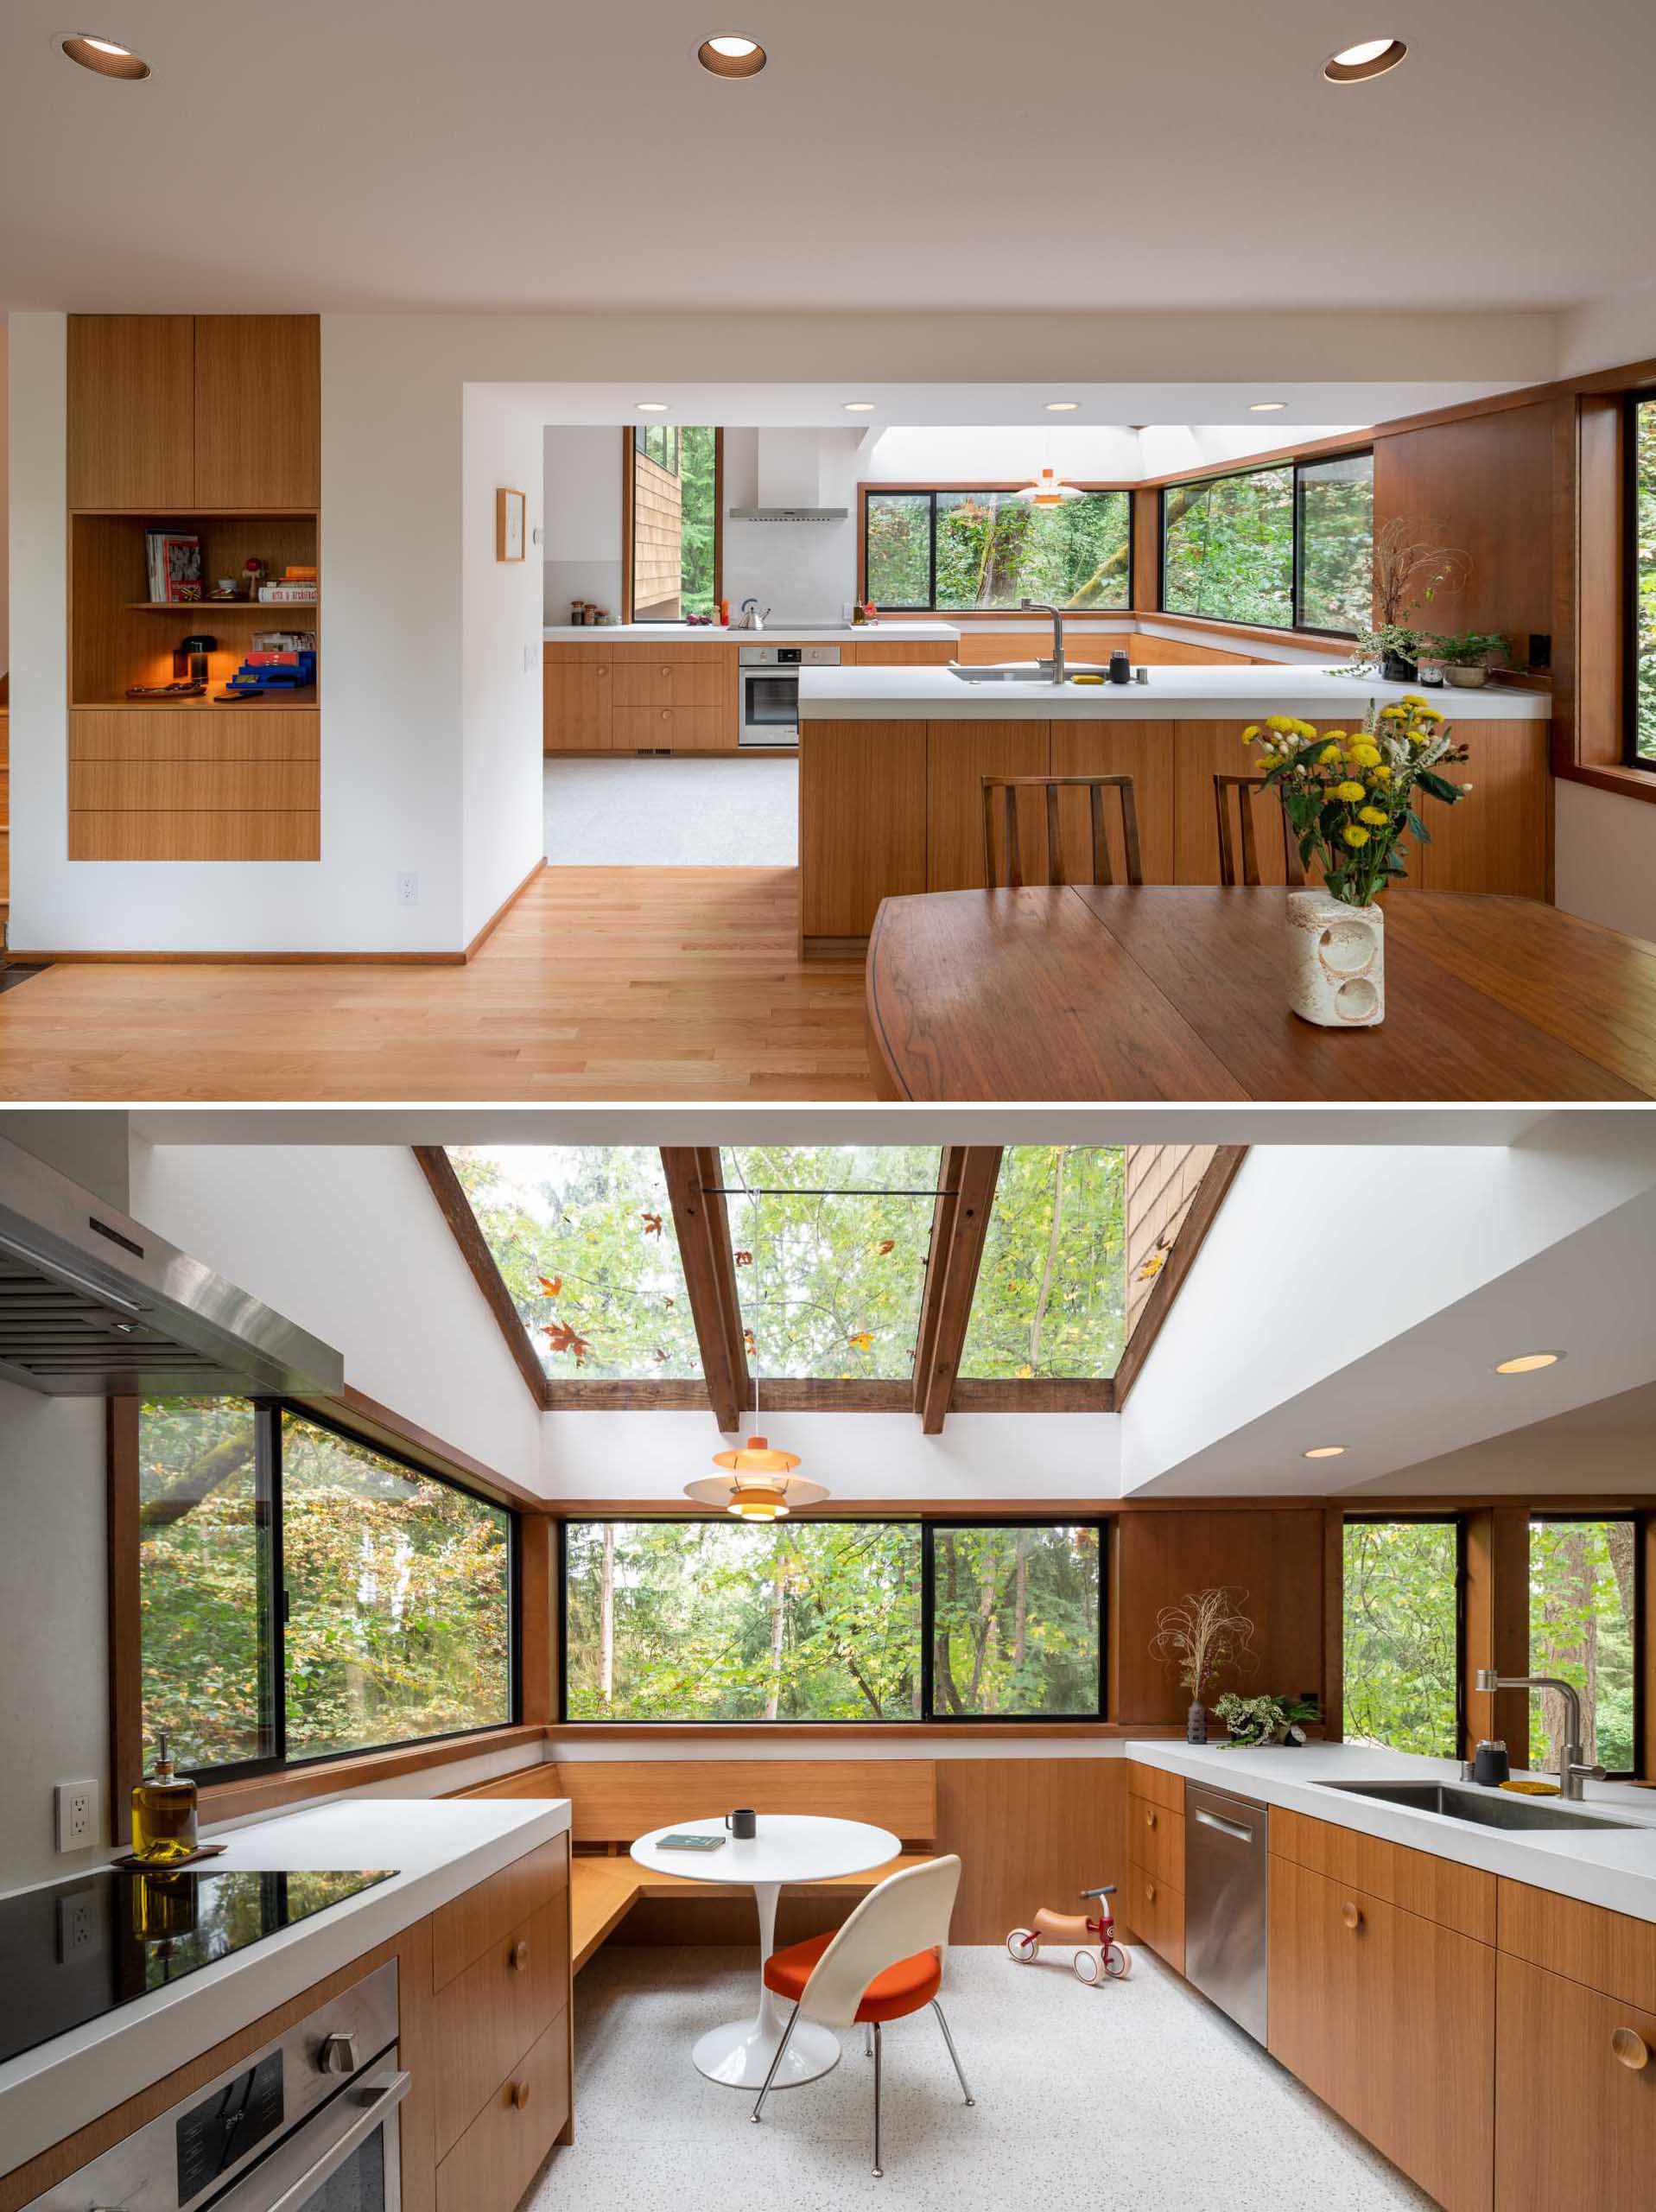 آشپزخانه‌ای بازسازی‌شده با گوشه‌ای توکار برای صبحانه در زیر نورگیرها و در کنار پنجره‌هایی با چشم‌انداز جنگل.